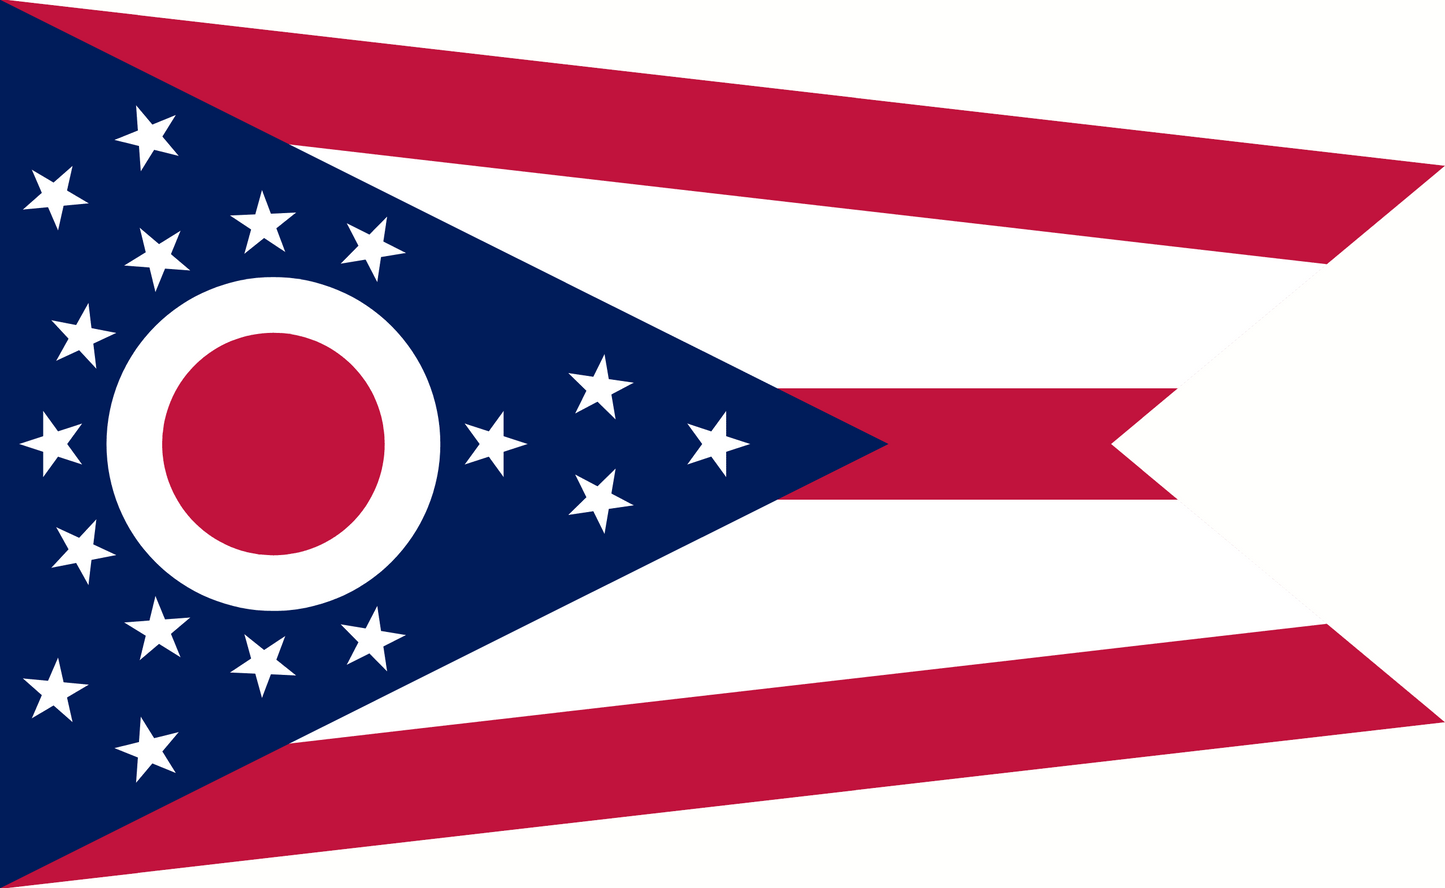 Ohio State Flag - 5x8 Feet